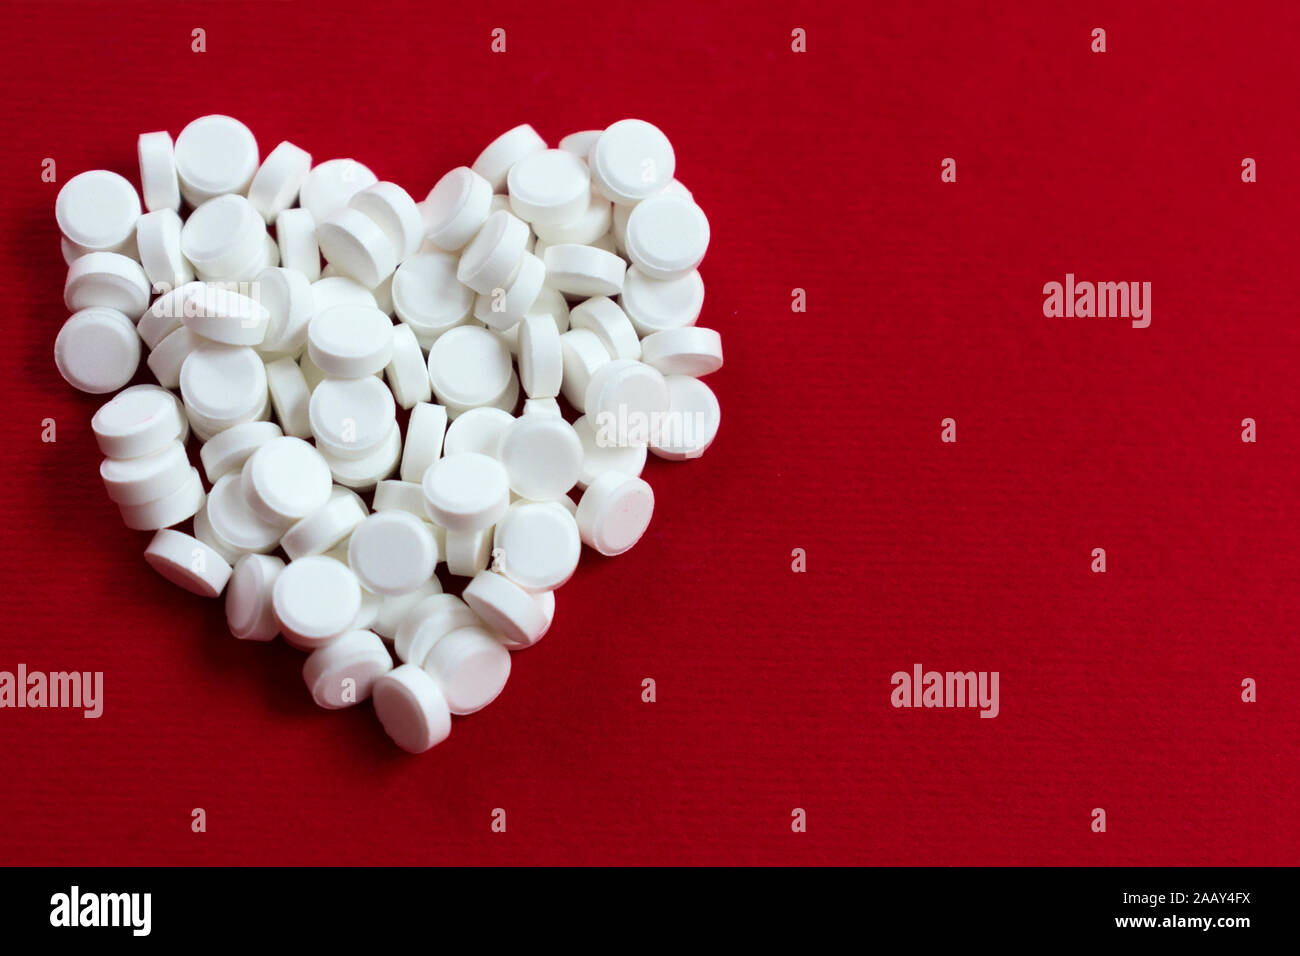 Ein Herz aus kleinen weißen Pillen auf einem roten Hintergrund. Das Konzept der Herzkrankheit. Stockfoto